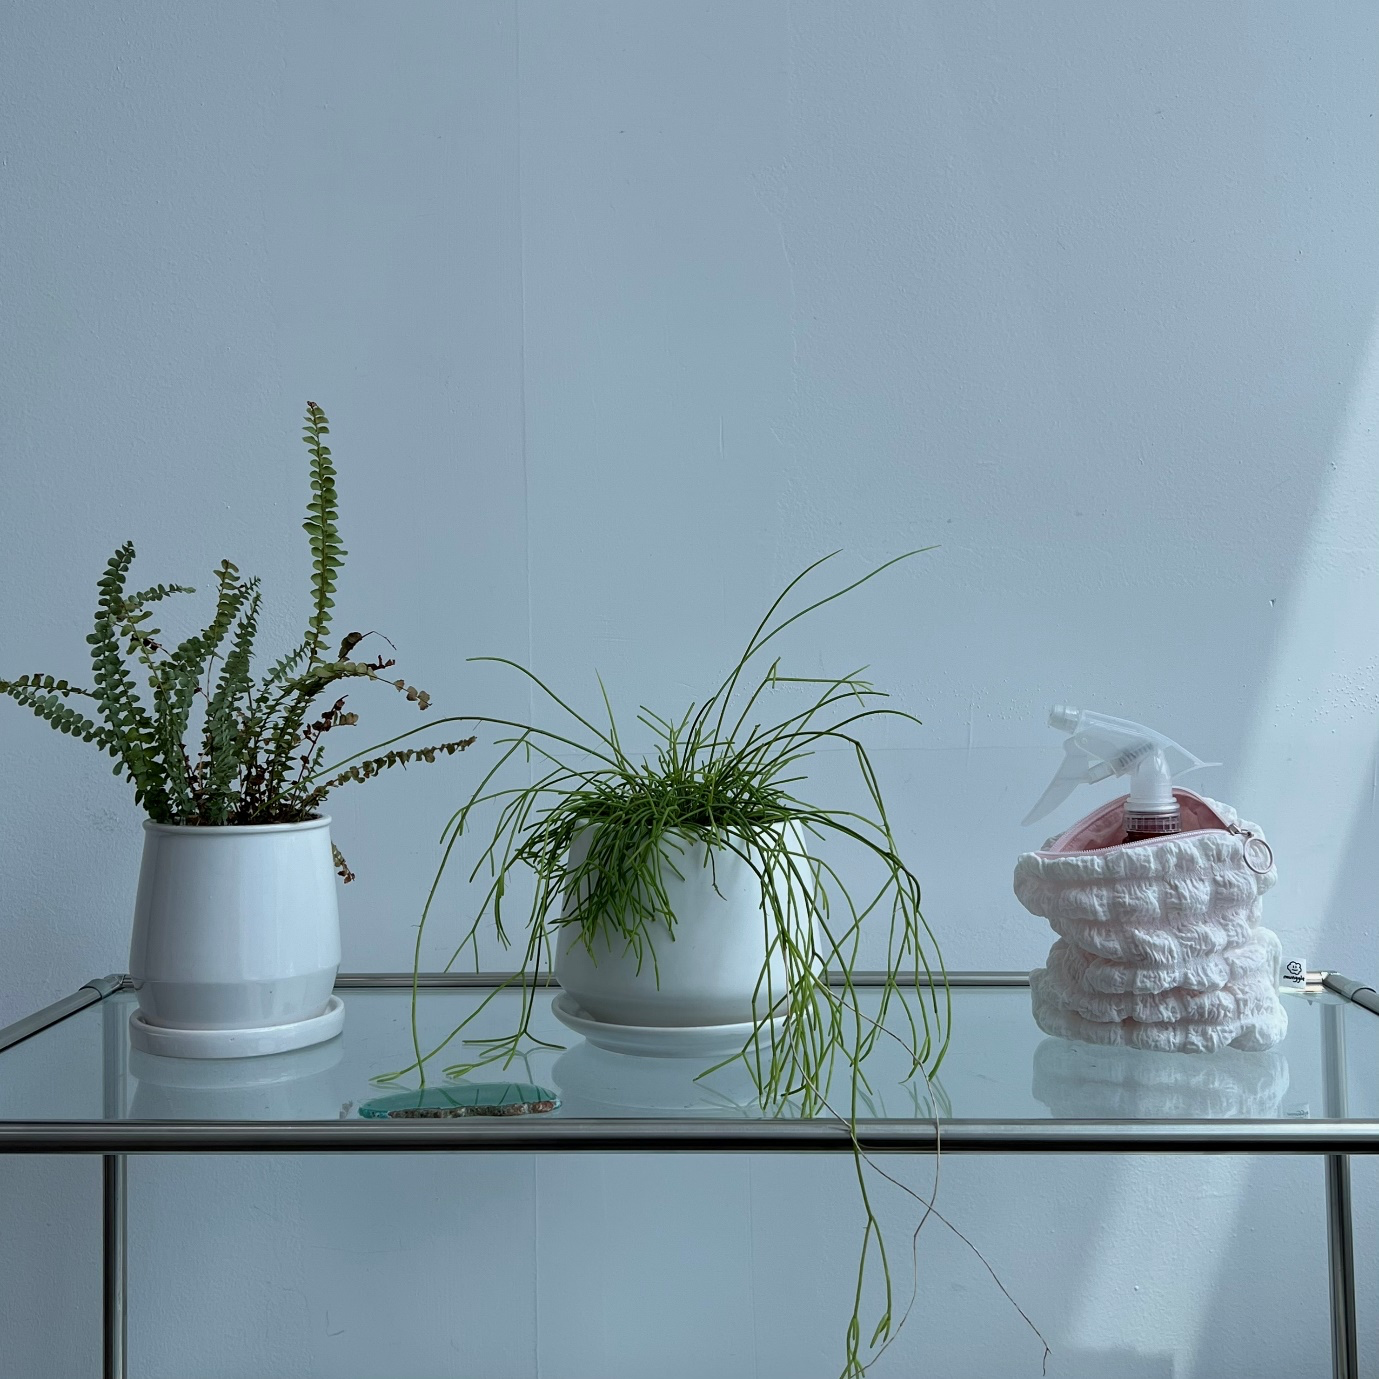 실내용 화초, 화분, 식물, 꽃병이(가) 표시된 사진

자동 생성된 설명